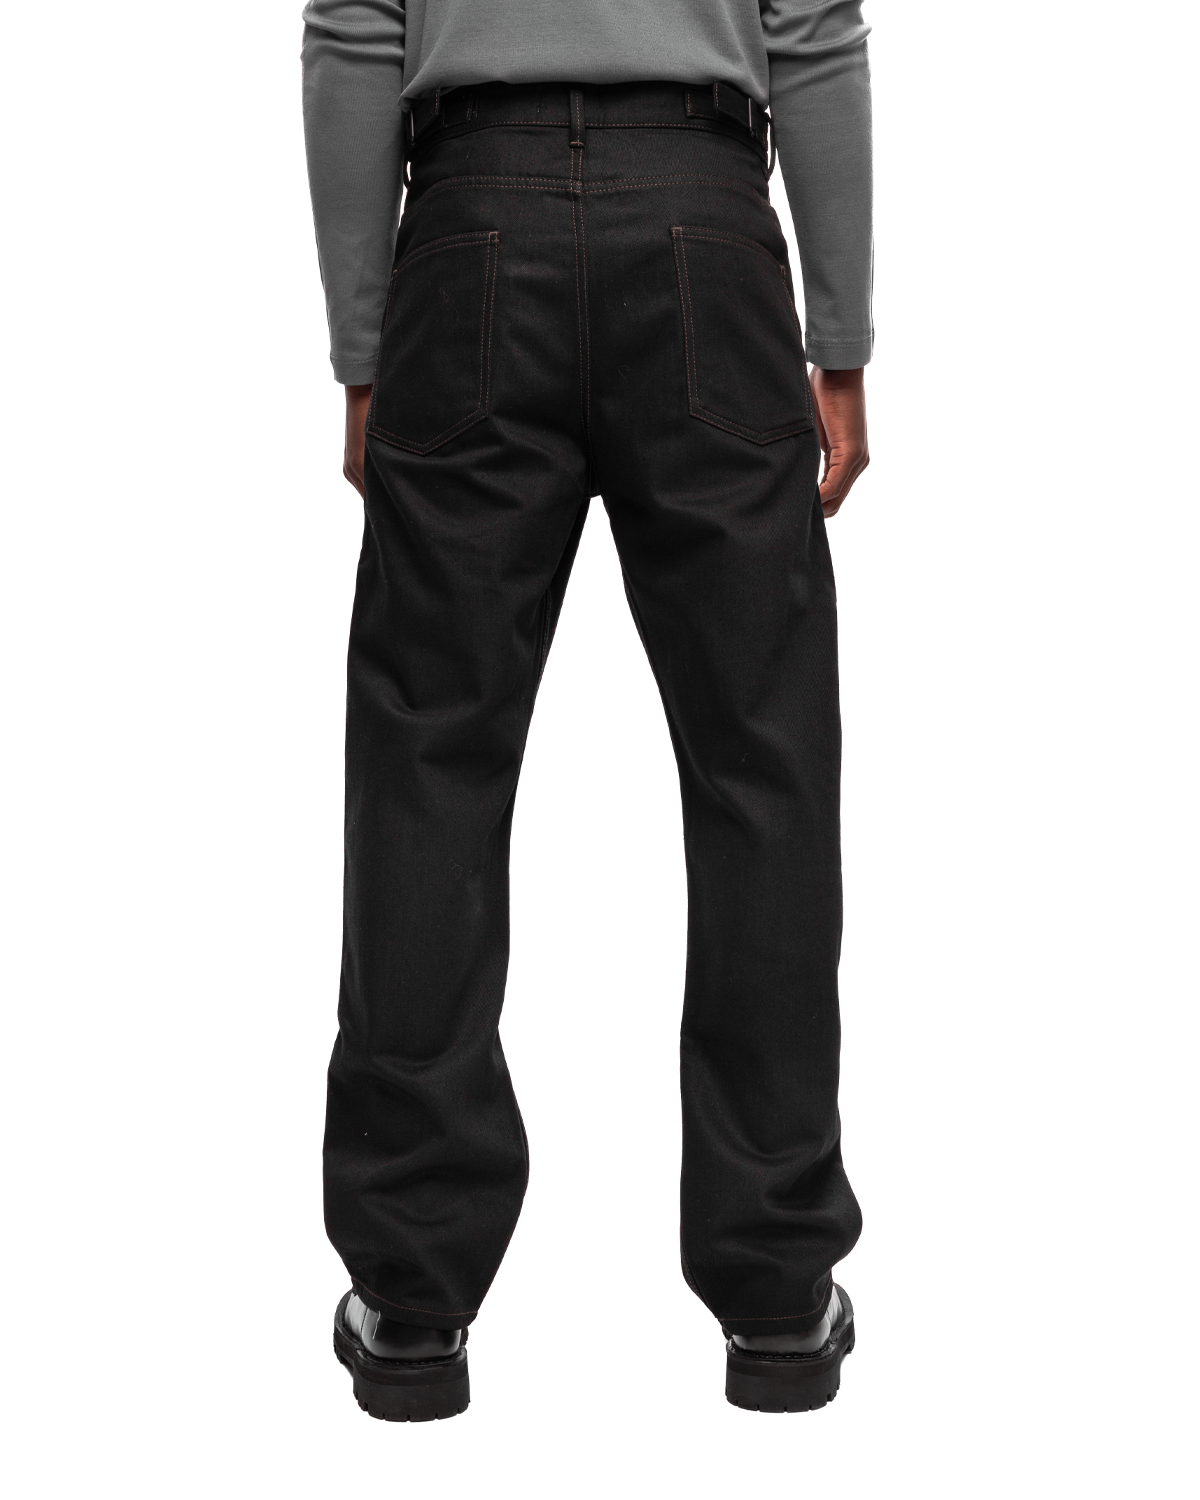 Très Bien - Lemaire Curved 5 Pocket Pants Black